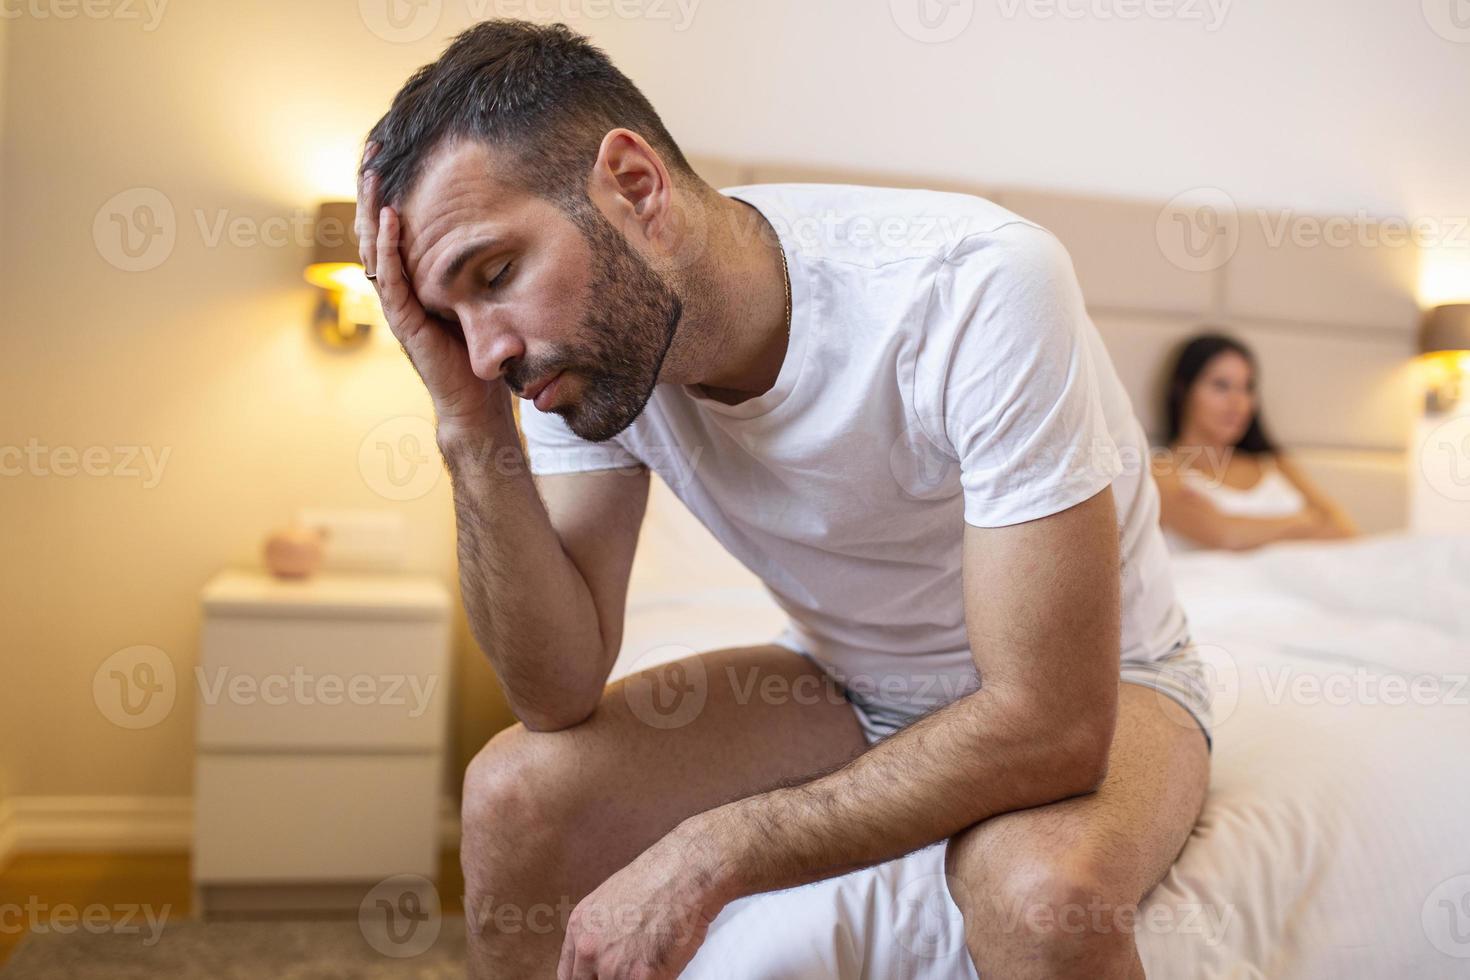 jeune couple en crise relationnelle, homme et femme bouleversés assis séparés sur le lit, espace vide entre eux photo